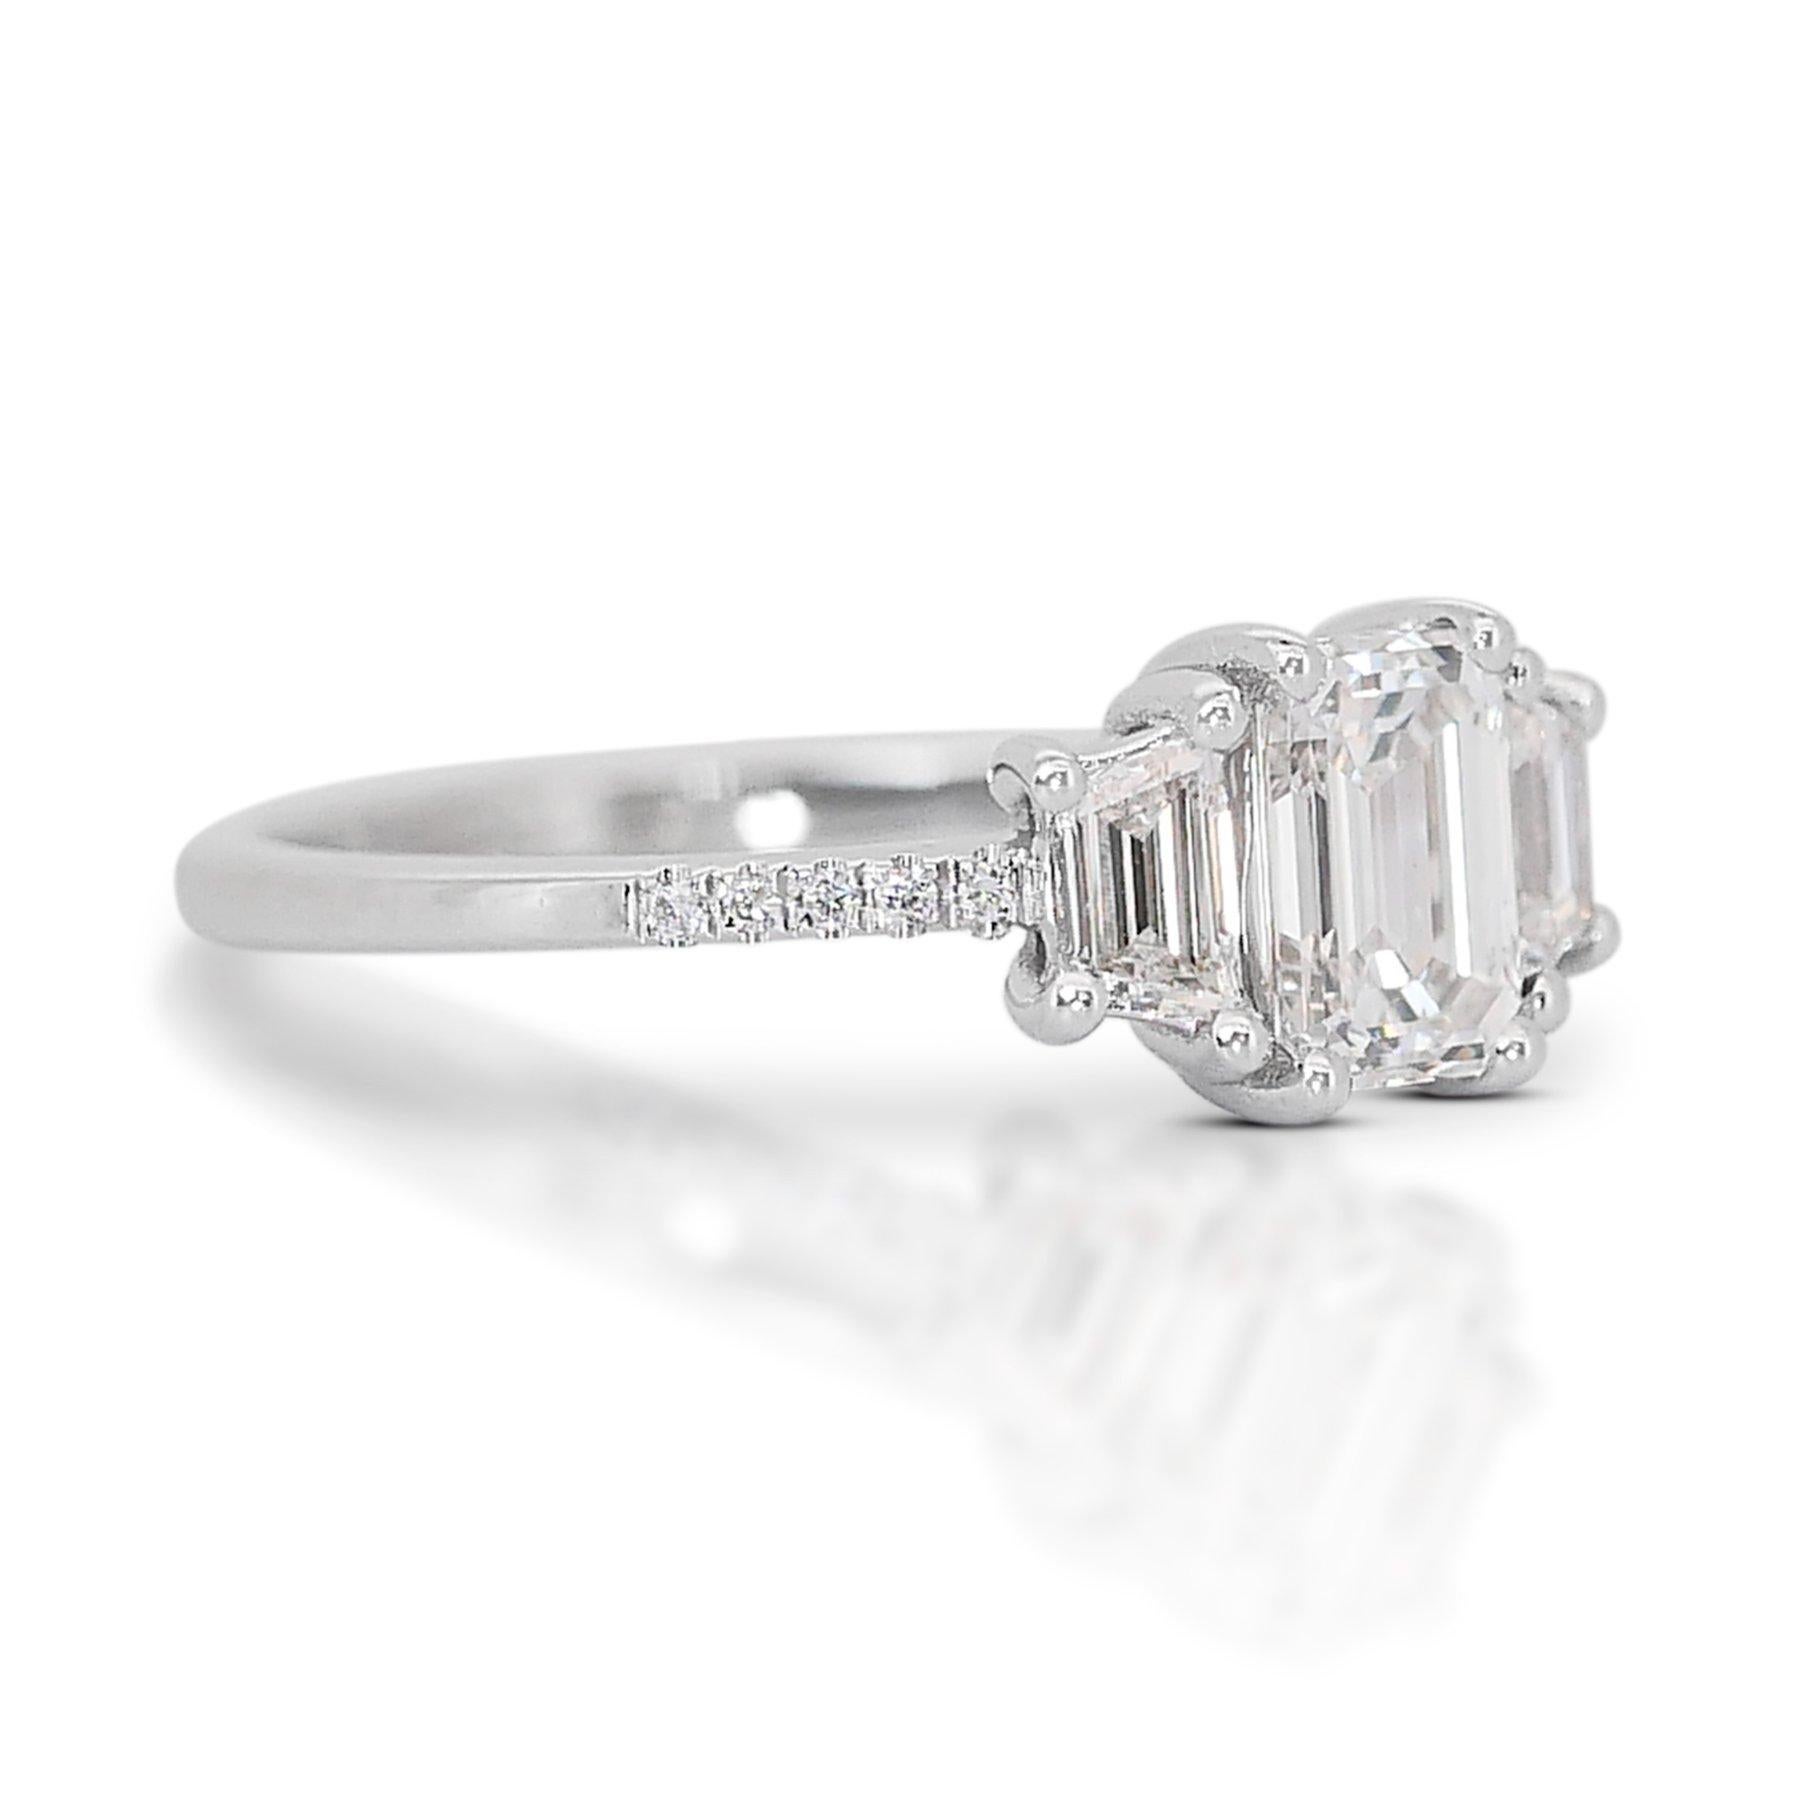 Eleganter 1,11 Karat Diamant 3-Stein-Ring aus 18k Weißgold - IGI-zertifiziert

Erhöhen Sie Ihren Stil mit diesem 3-Stein-Diamantring, einer atemberaubenden Komposition aus Klarheit und Brillanz, gefasst in 18 Karat Weißgold. Das Herzstück dieses